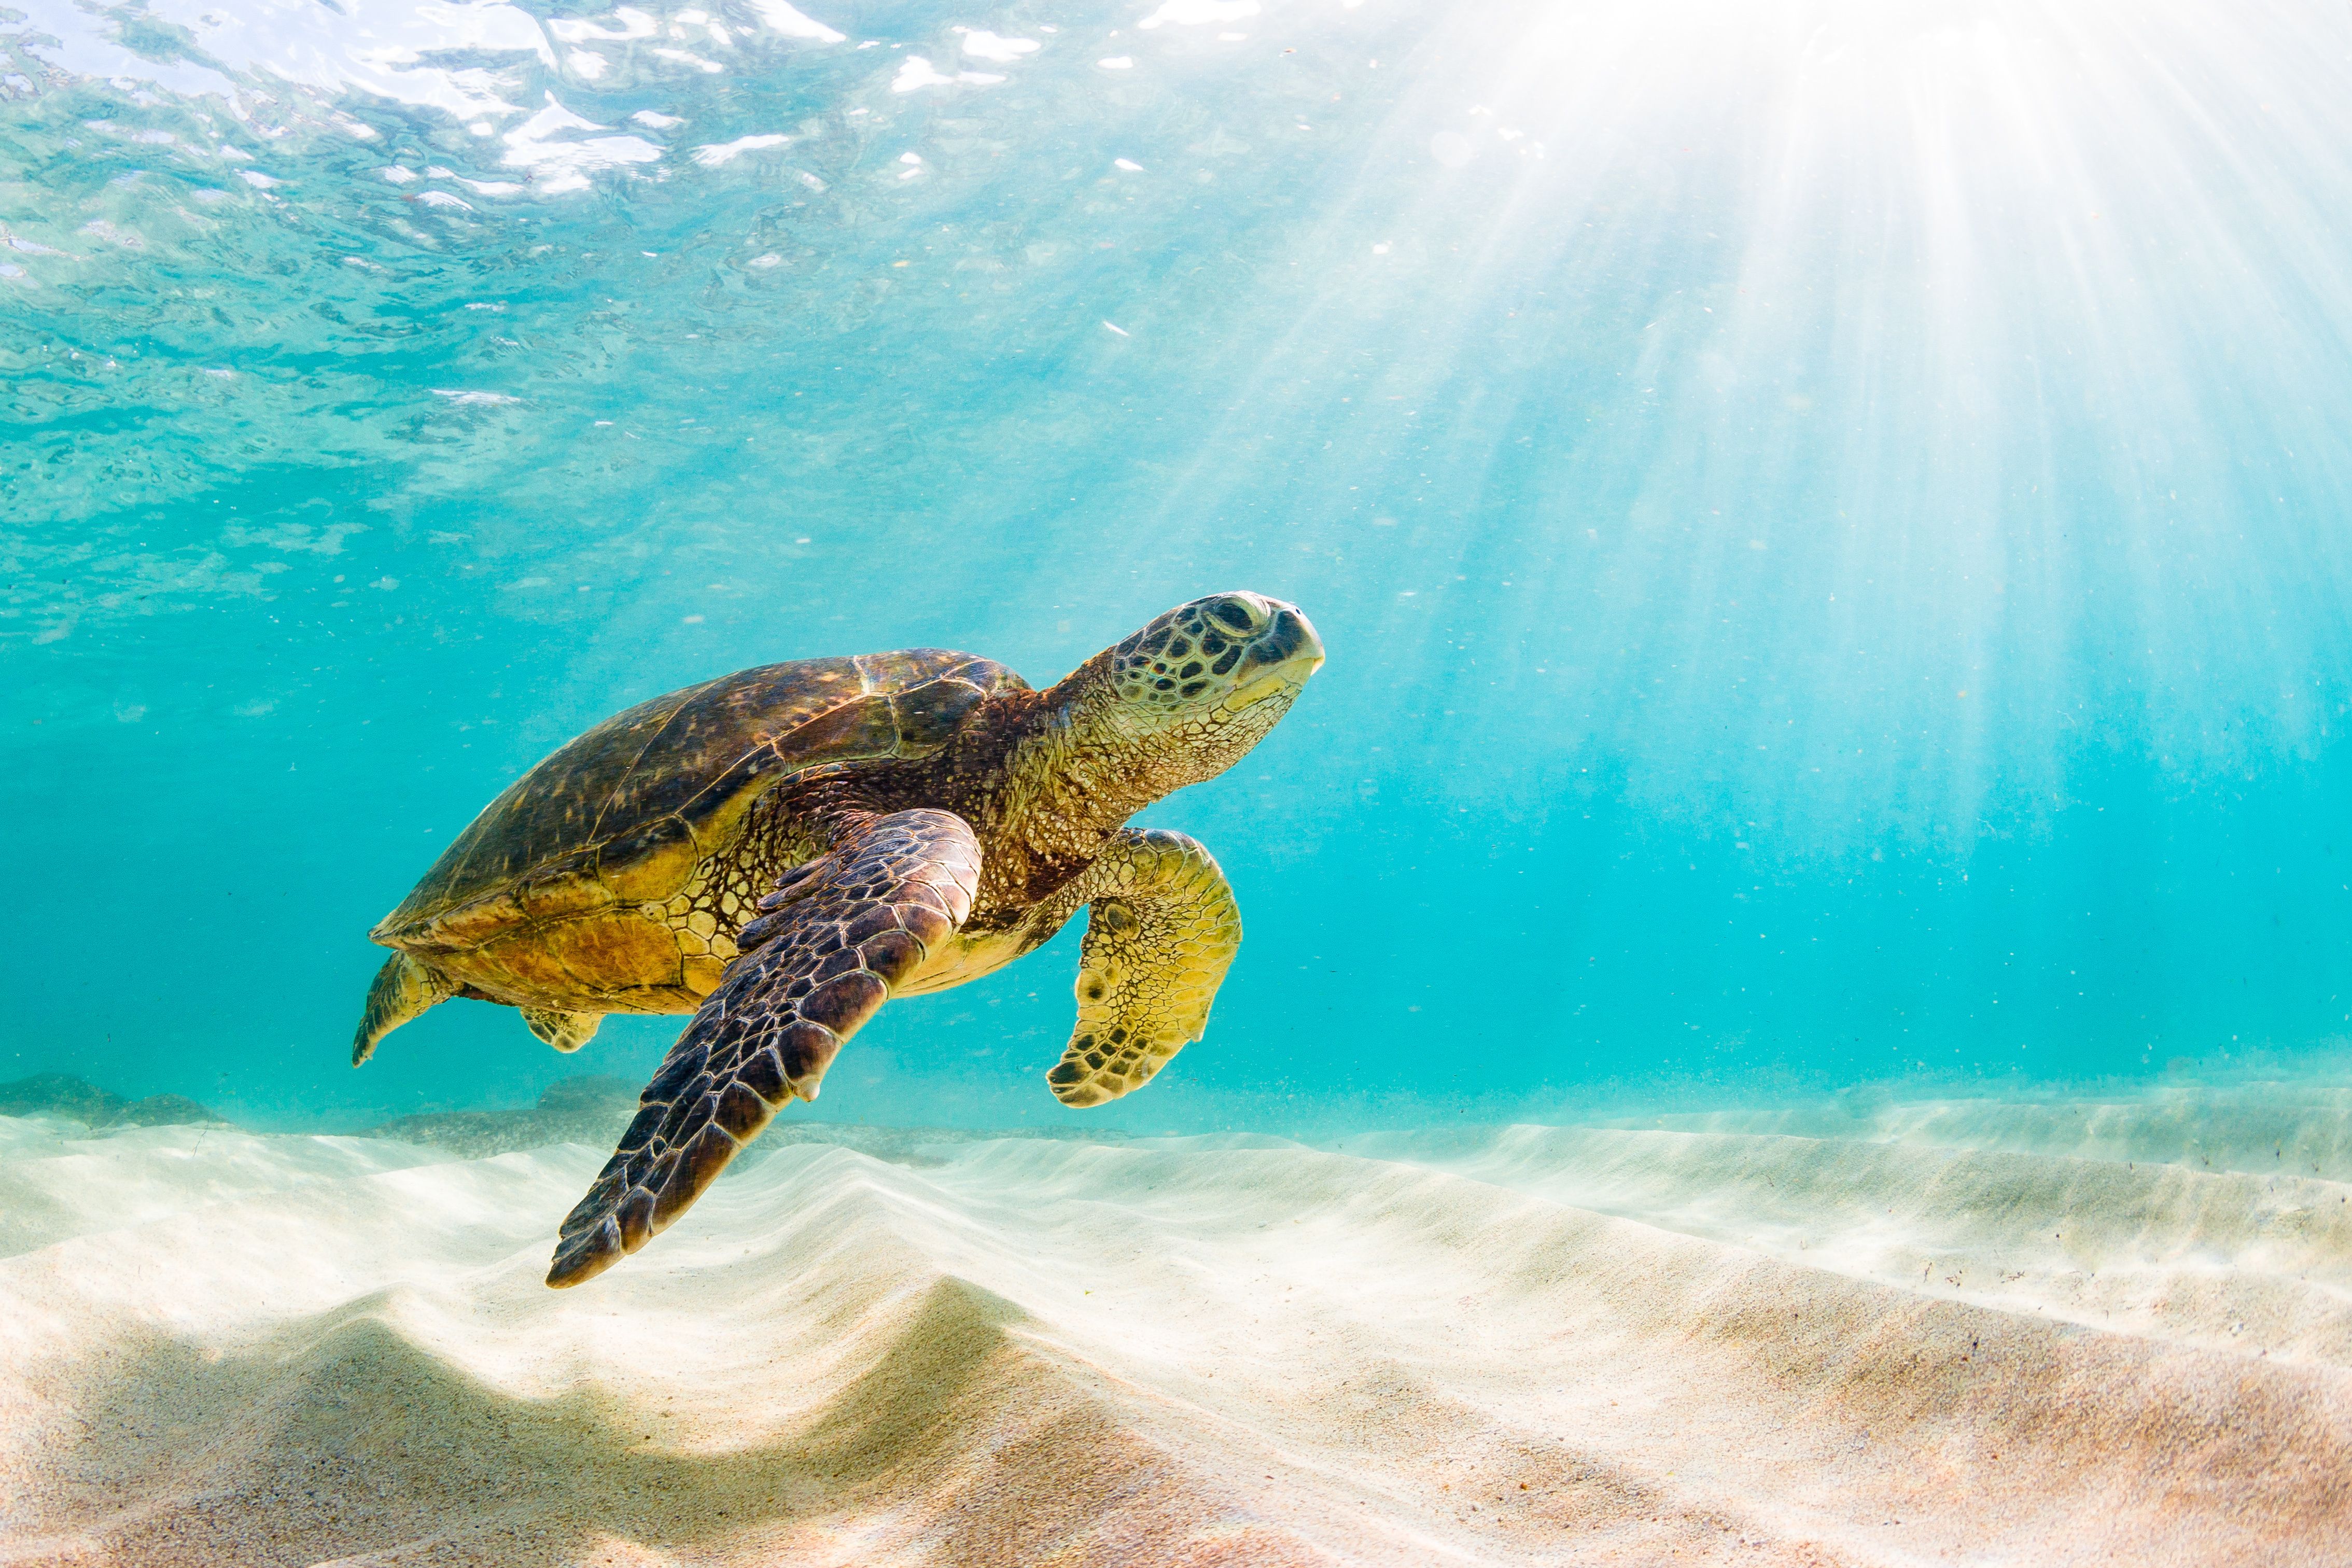 Patterson Veterinary celebrates World Sea Turtle Day 2022